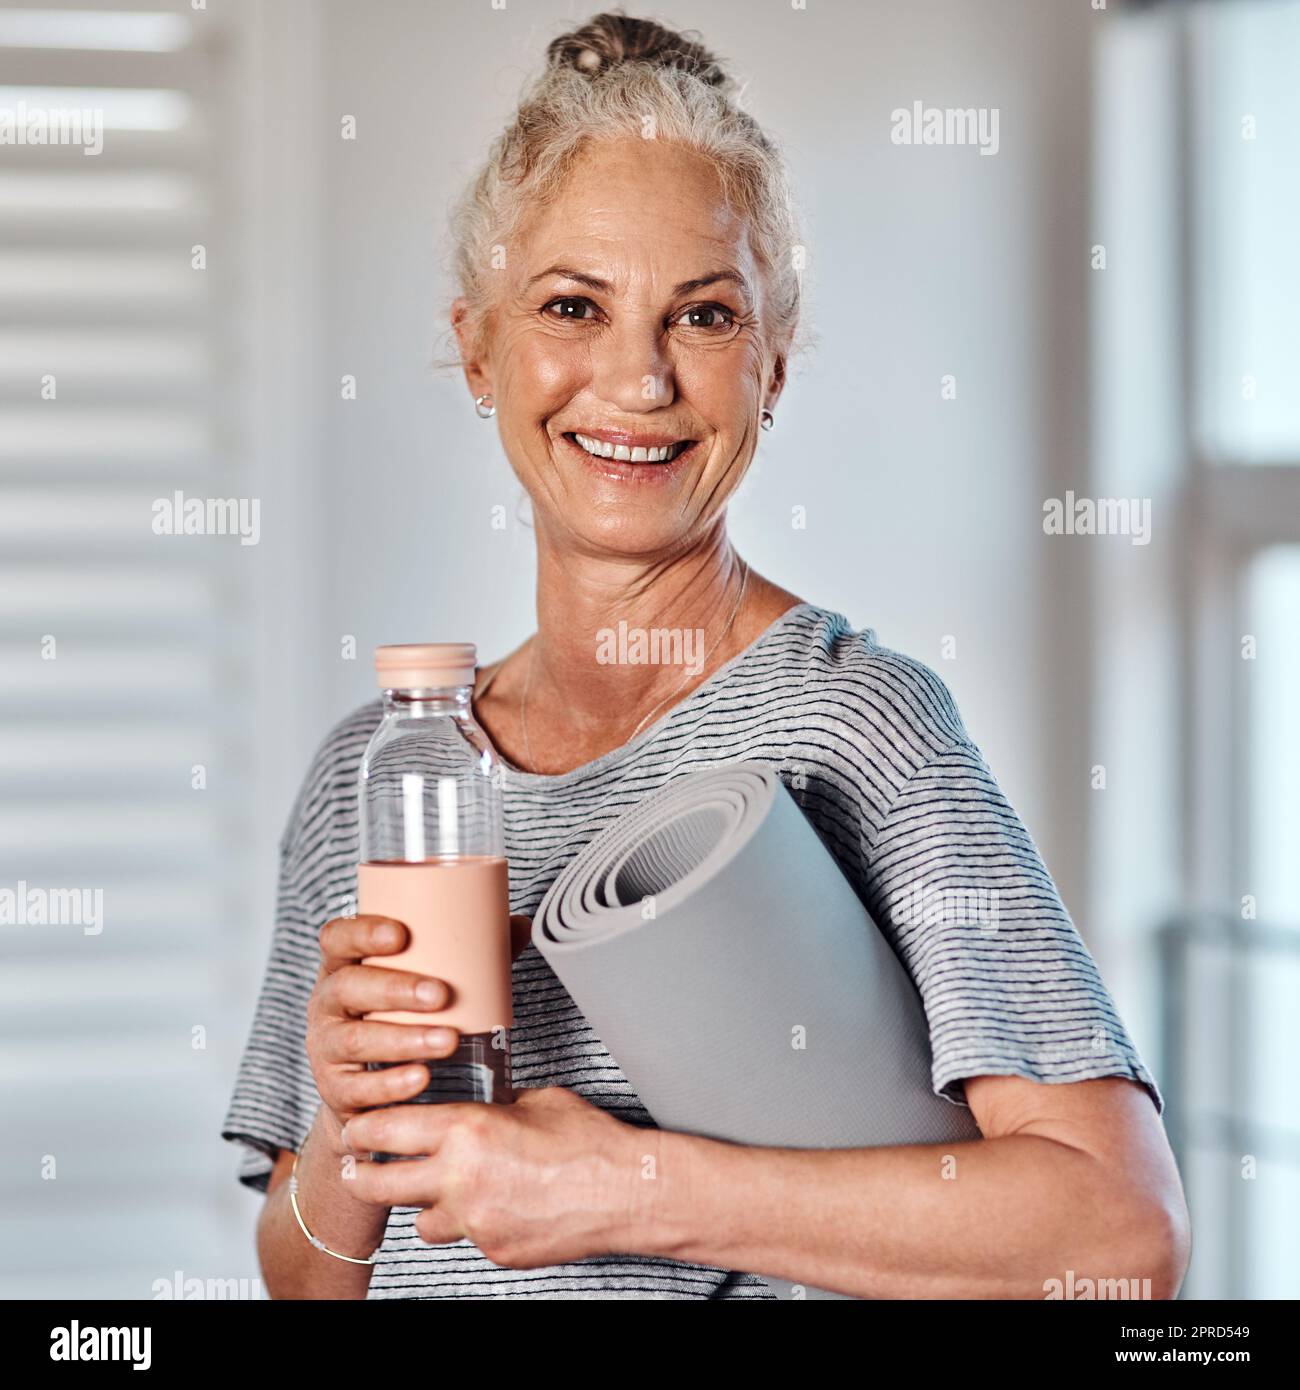 J'ai tout ce dont j'ai besoin pour commencer mon entraînement. Portrait d'une femme mûre et gaie tenant une bouteille d'eau et un tapis de yoga prêt à commencer sa séance matinale de yoga à l'intérieur d'un studio. Banque D'Images